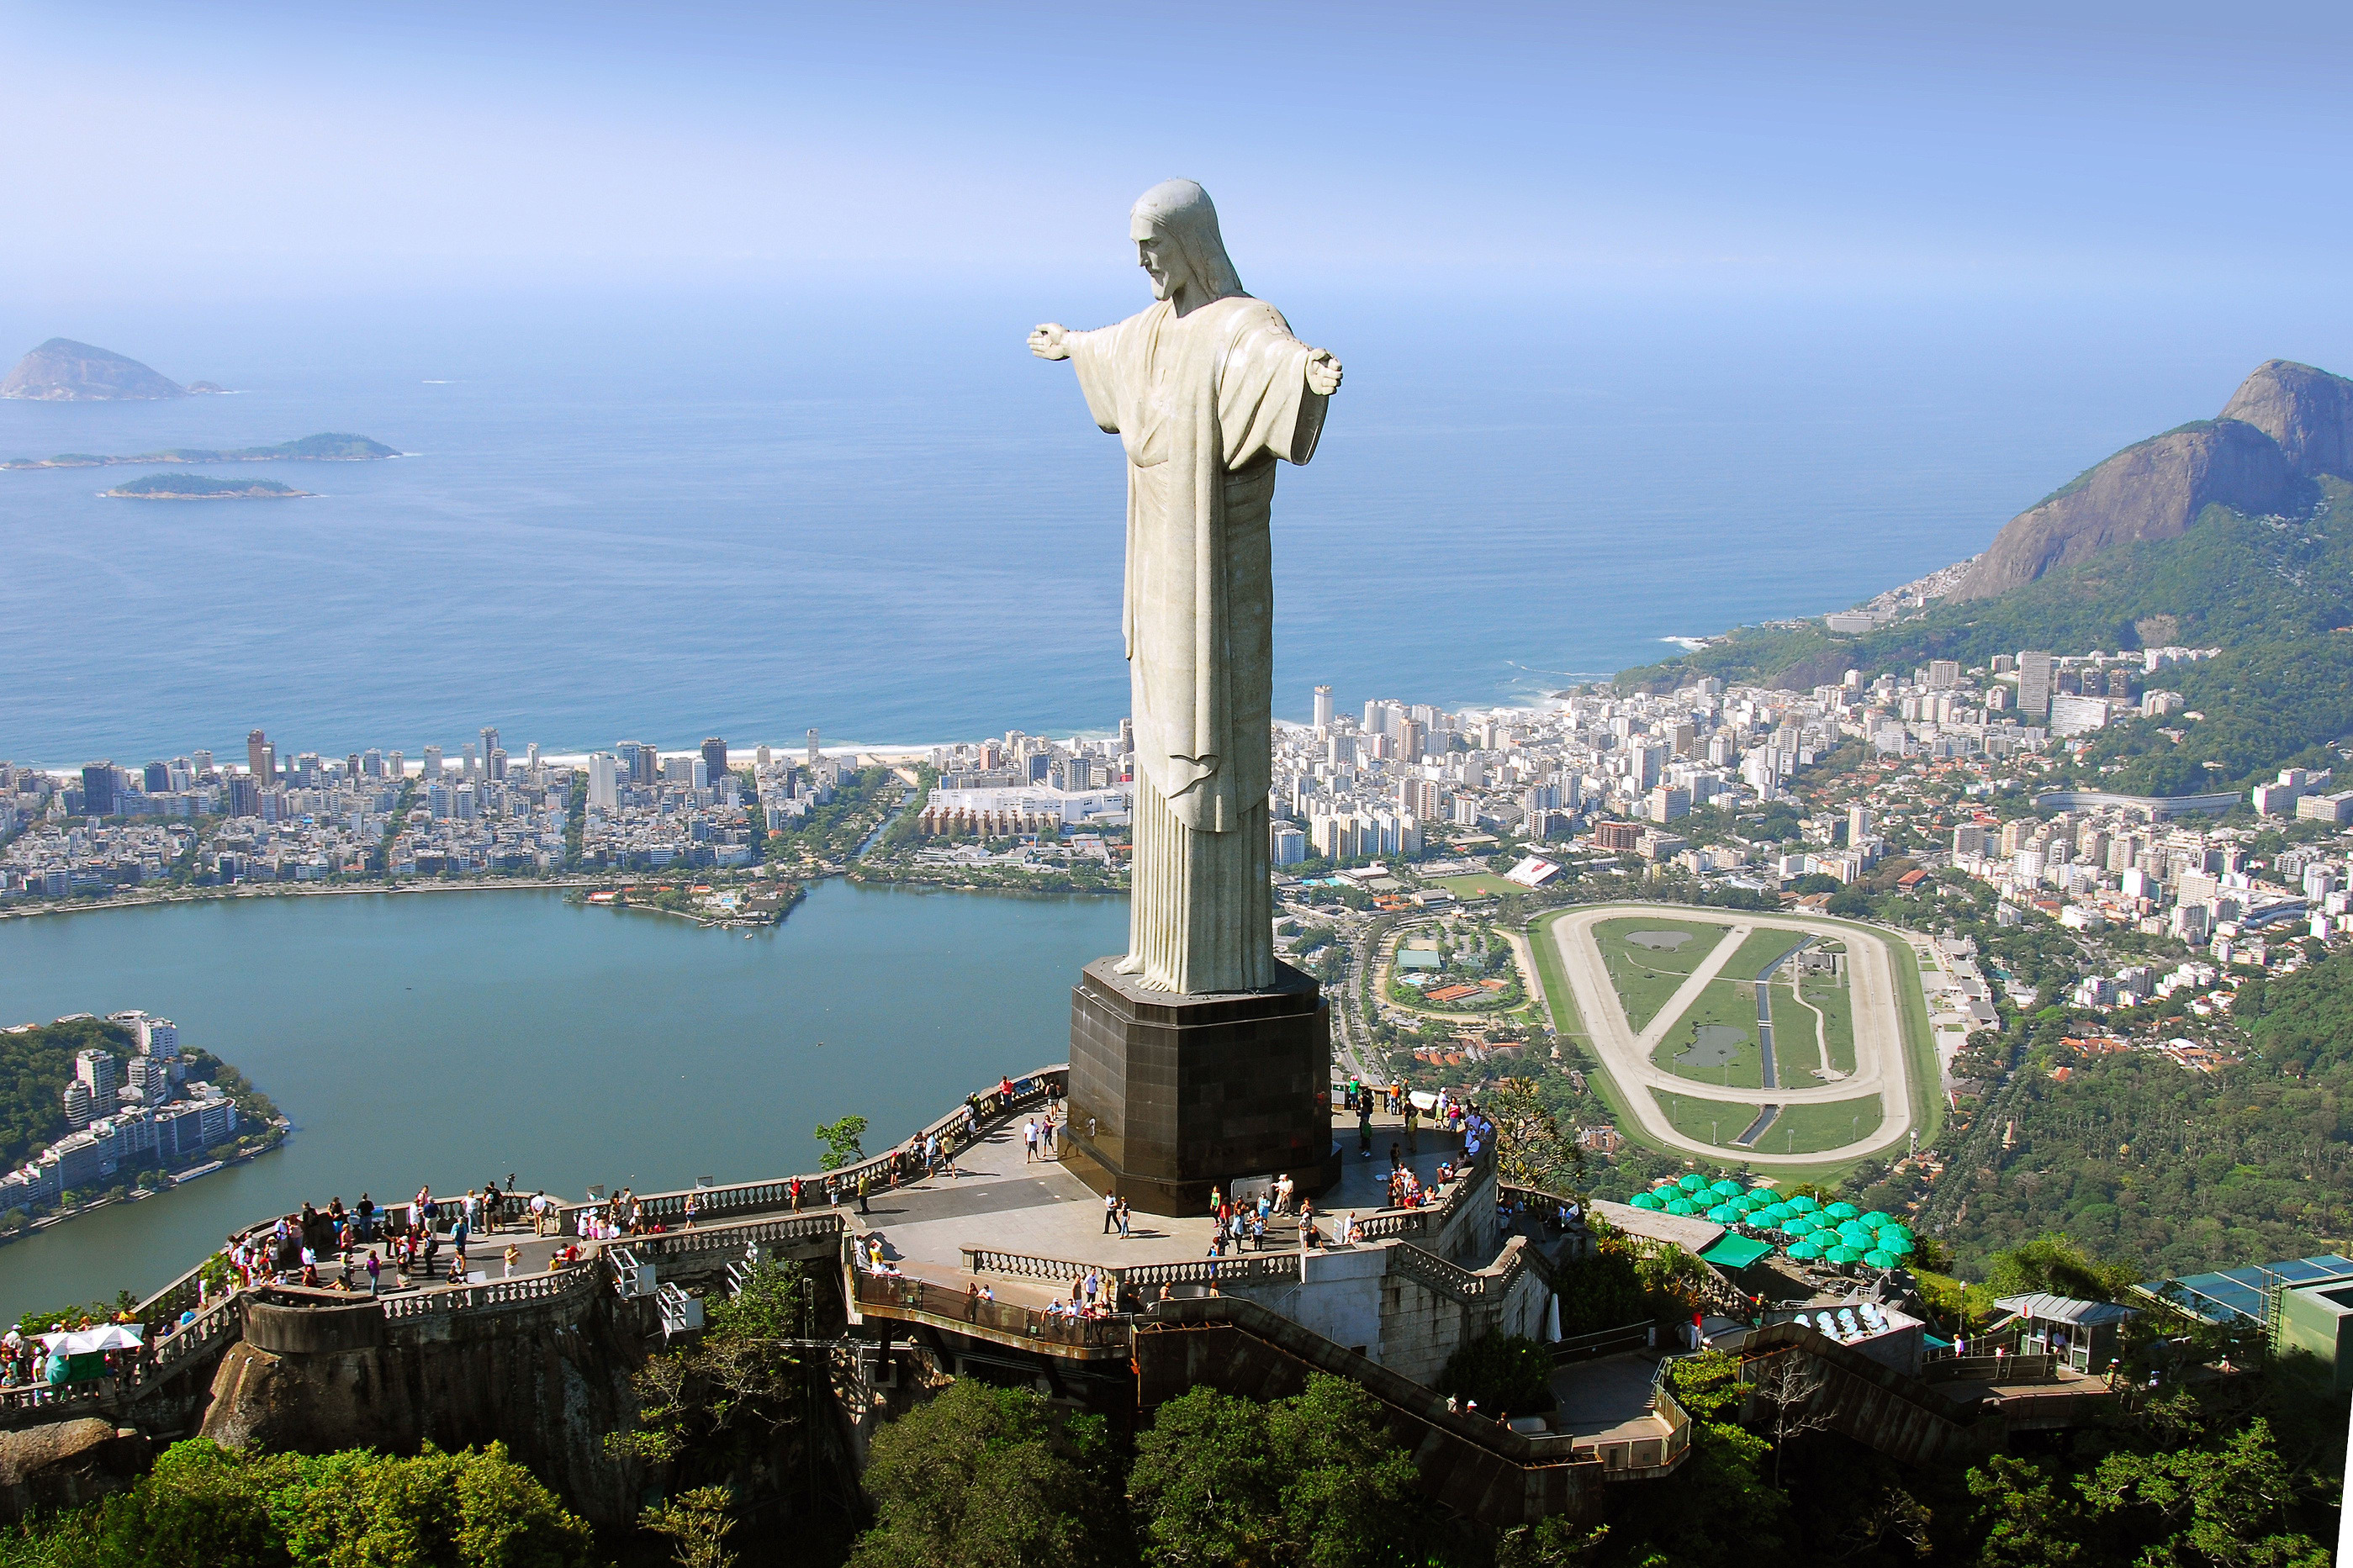 Christ The Redeemer In Rio de Janeiro, Brazil